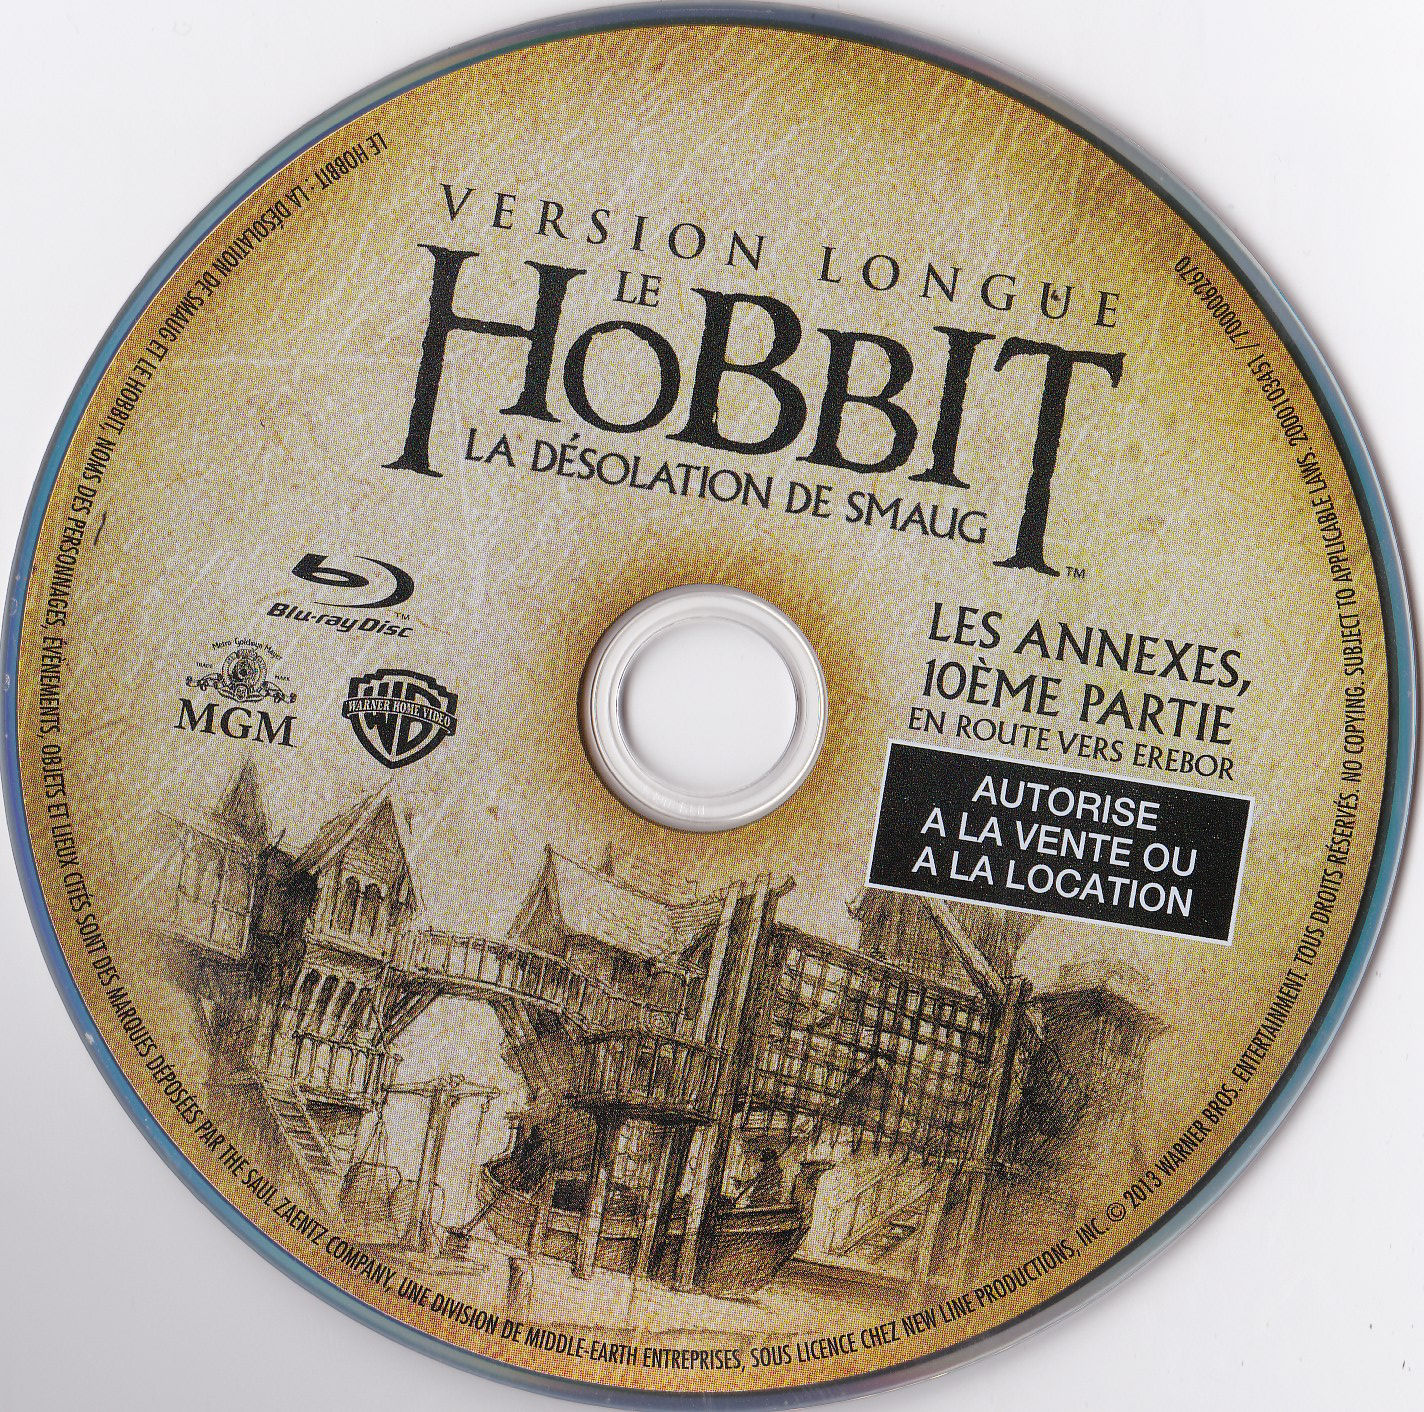 Le Hobbit la Dsolation de Smaug (Version longue) Les annexes 10me partie (BLU-RAY)